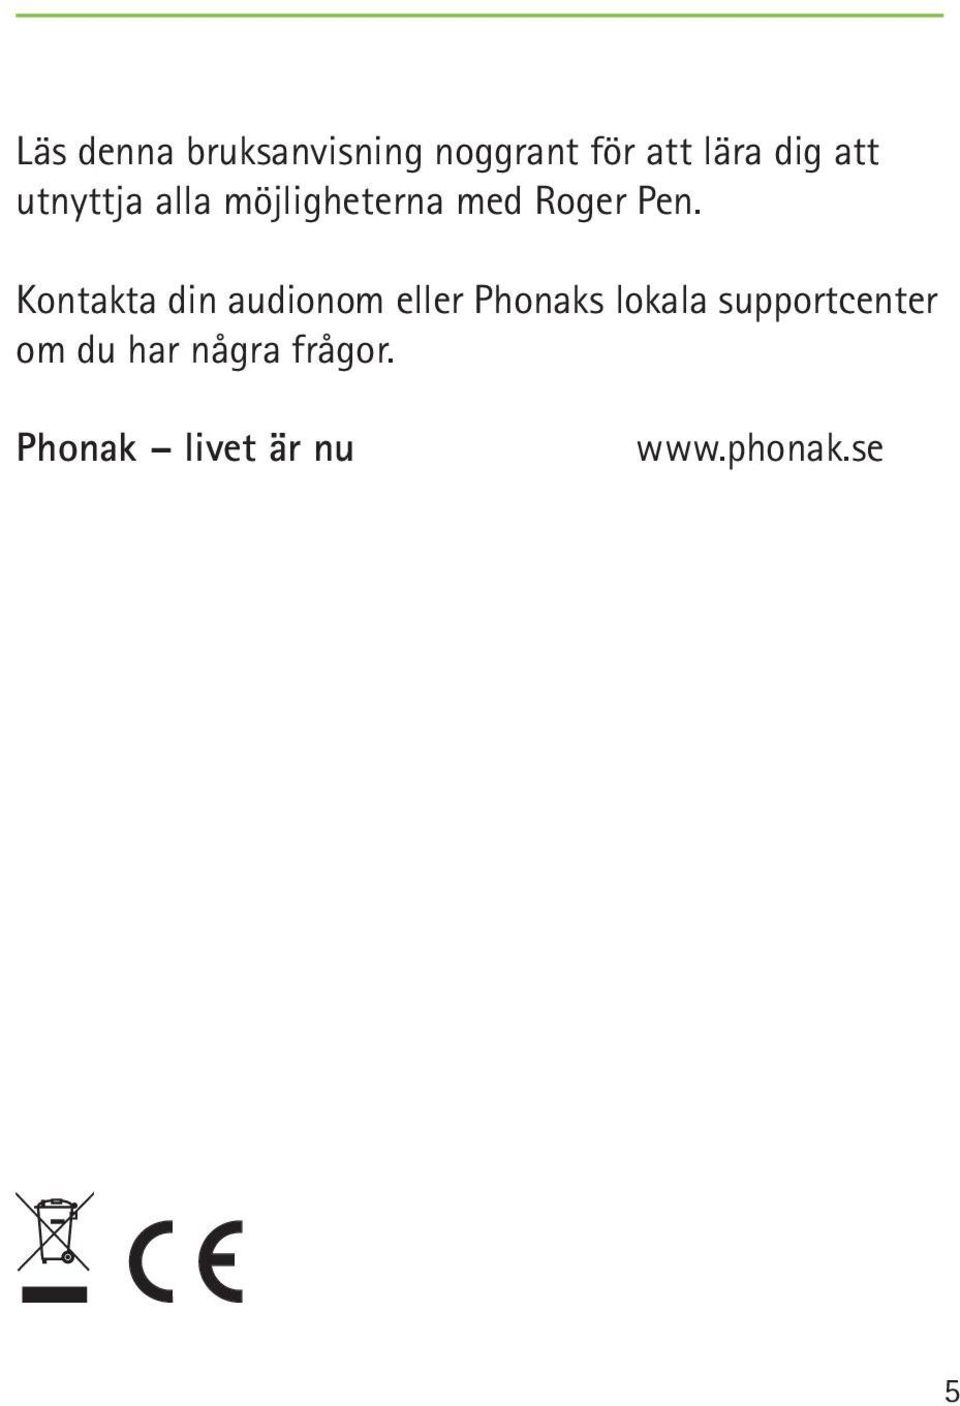 Kontakta din audionom eller Phonaks lokala